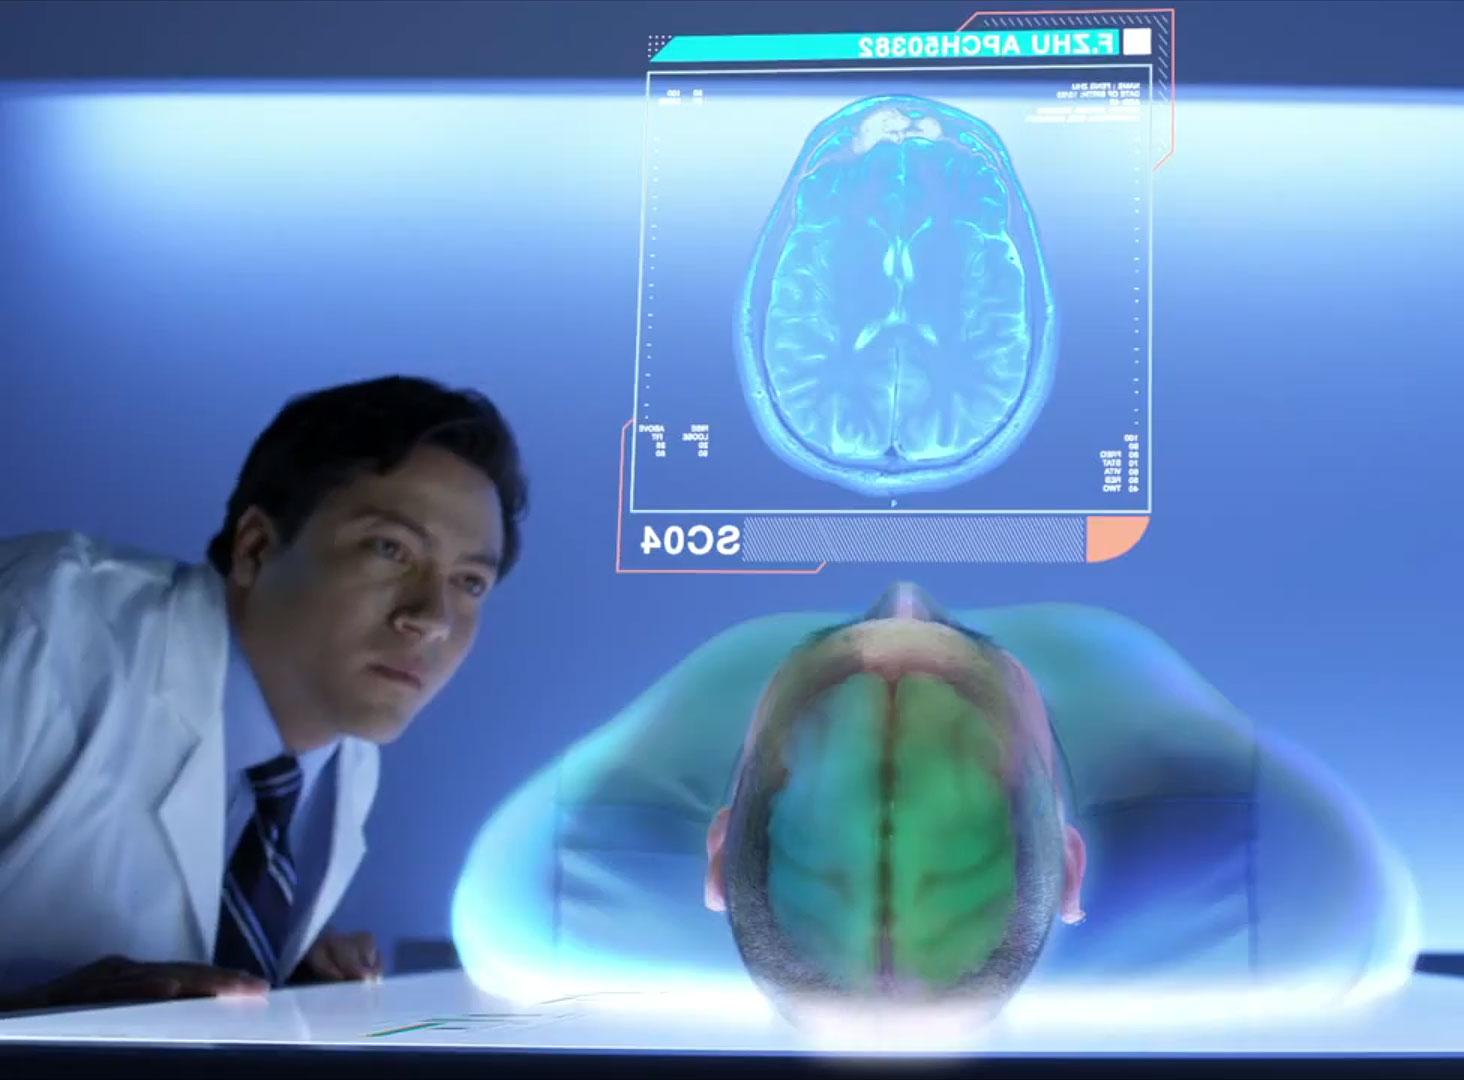 Hjernekirurgen får en lettere oppgave, skal vi tro videoen.